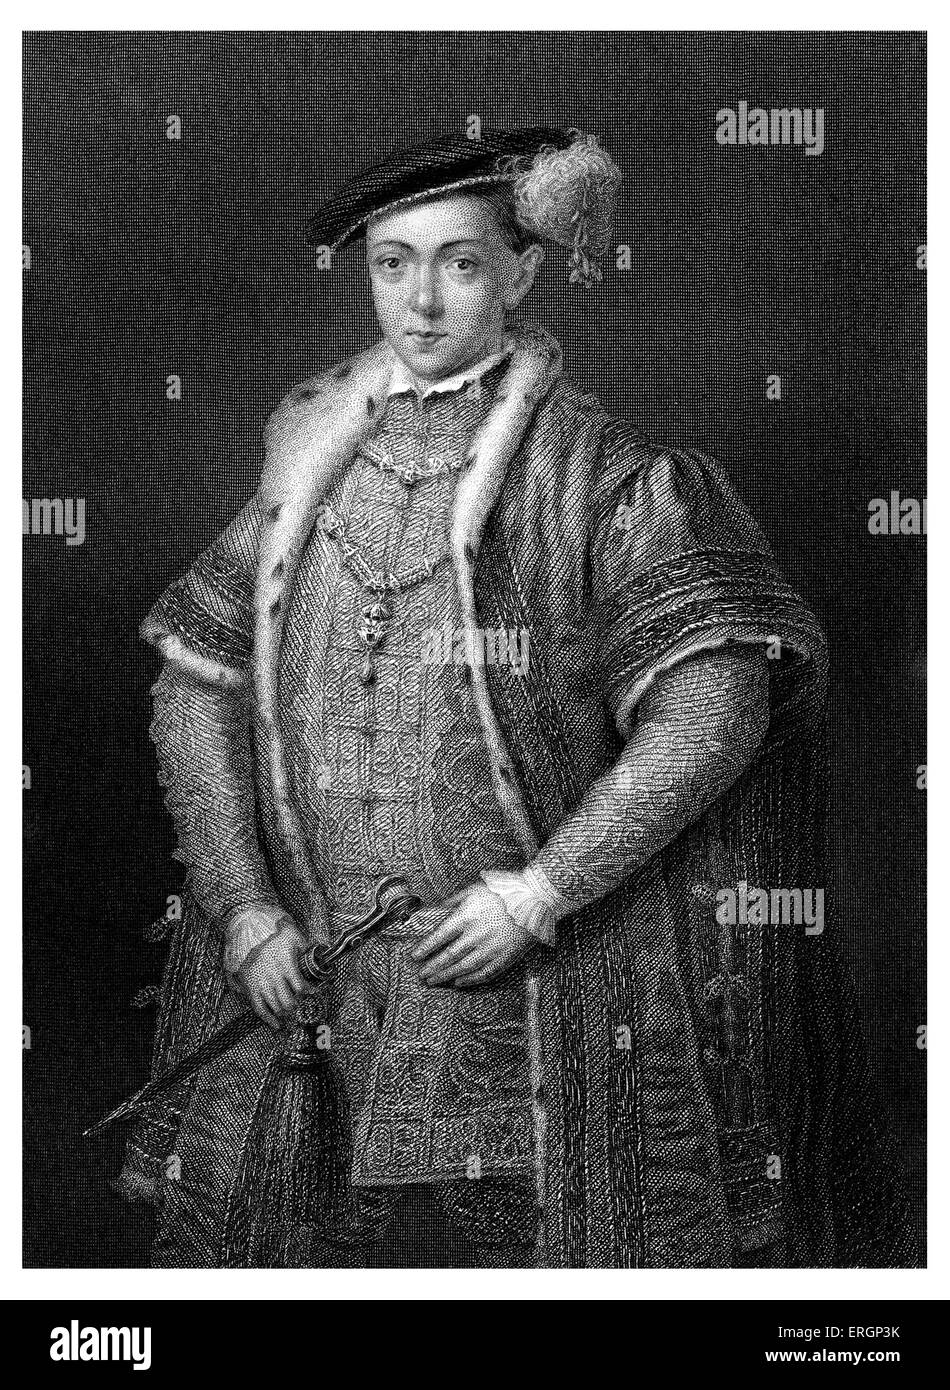 Edoardo VI, ritratto. Re di Inghilterra e Irlanda dal 28 gennaio 1547 fino alla sua morte. 12 Ottobre 1537 - 6 luglio 1553. Foto Stock